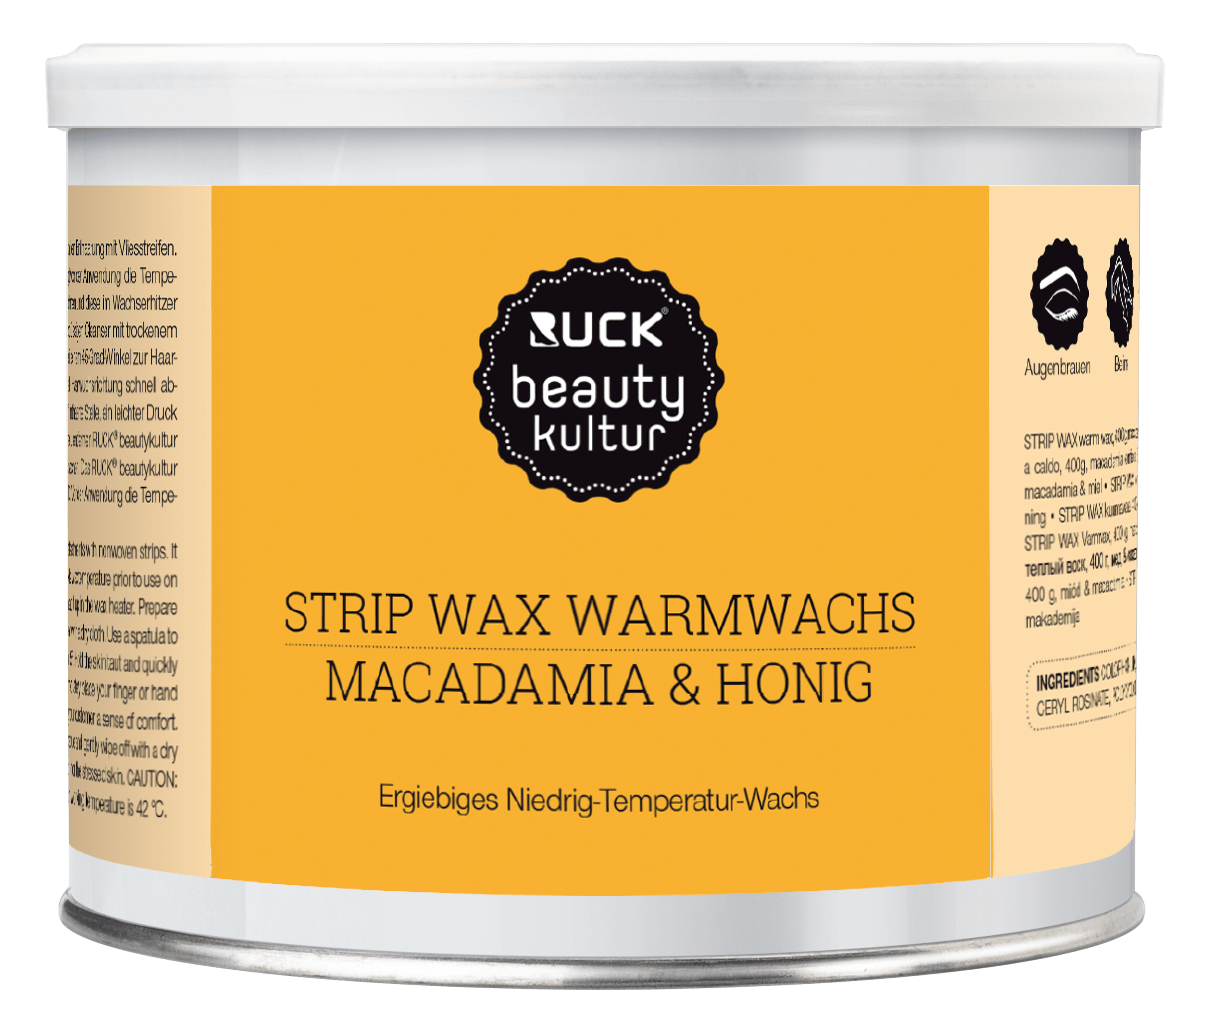 RUCK beautykultur - STRIP WAX Warmwachs, 400 g in orange